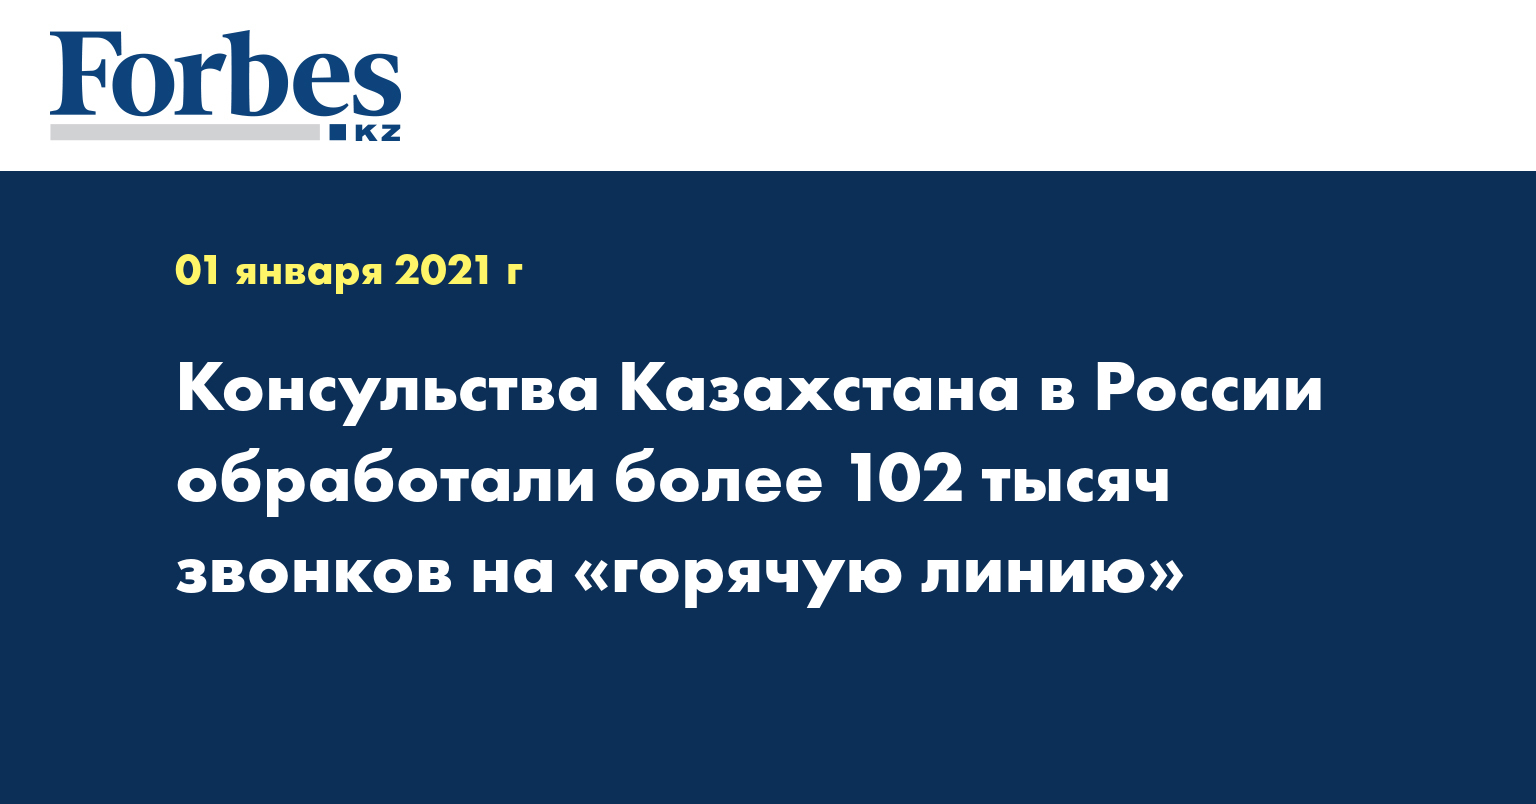 Консульства Казахстана в России обработали более 102 тысяч звонков на «горячую линию» 